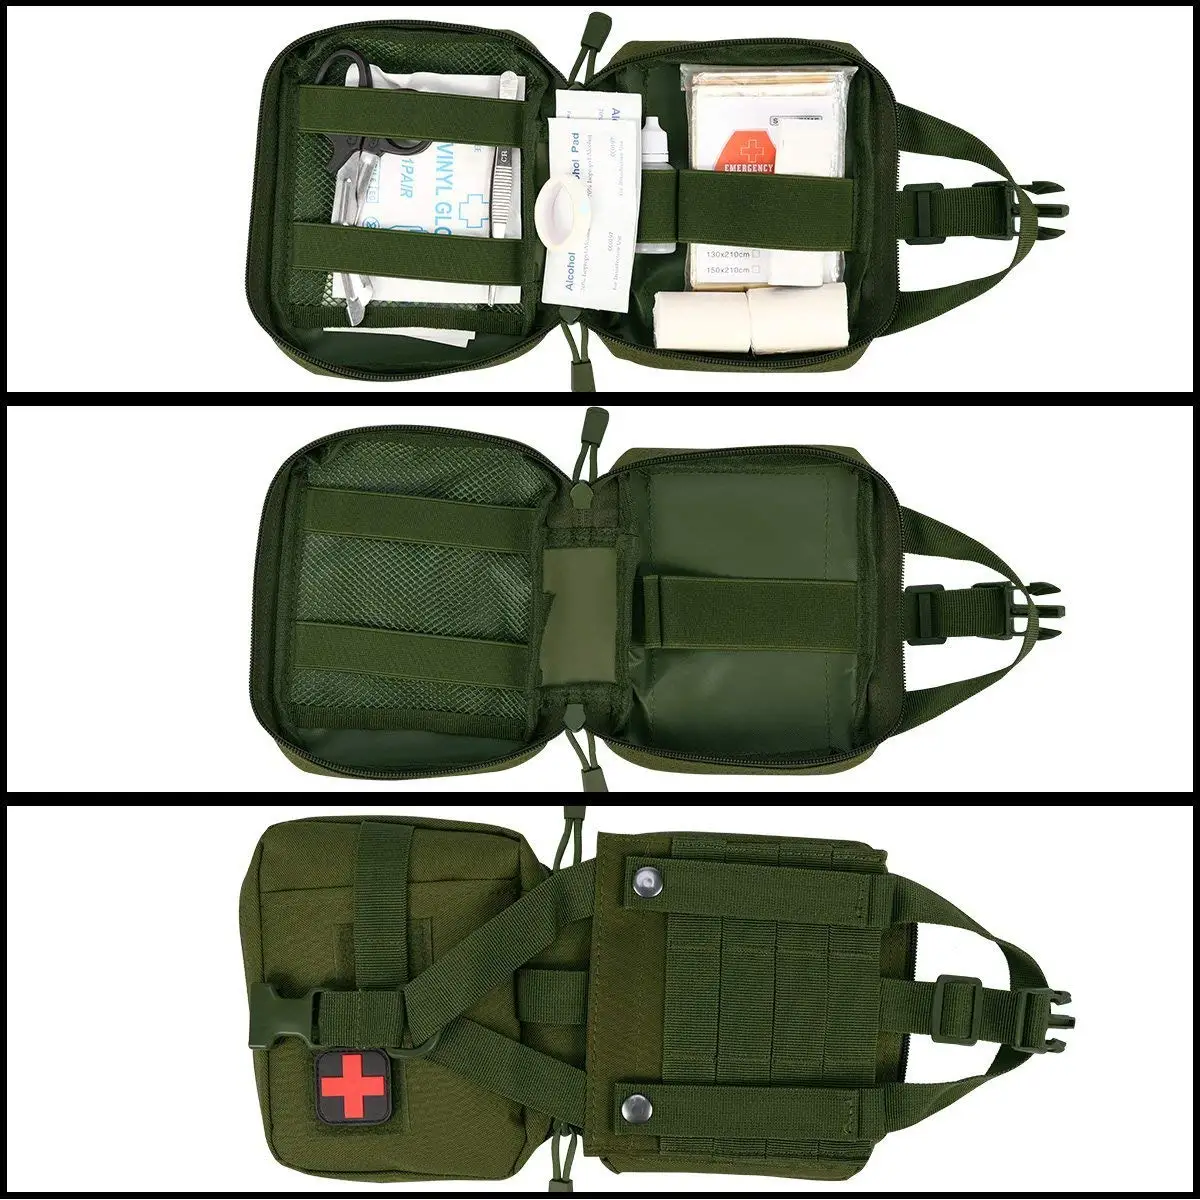 NylonTactical моль медицинская emt сумка для улицы Военная тактика EDC сумка для первой помощи аварийная утилита IFAK пакет